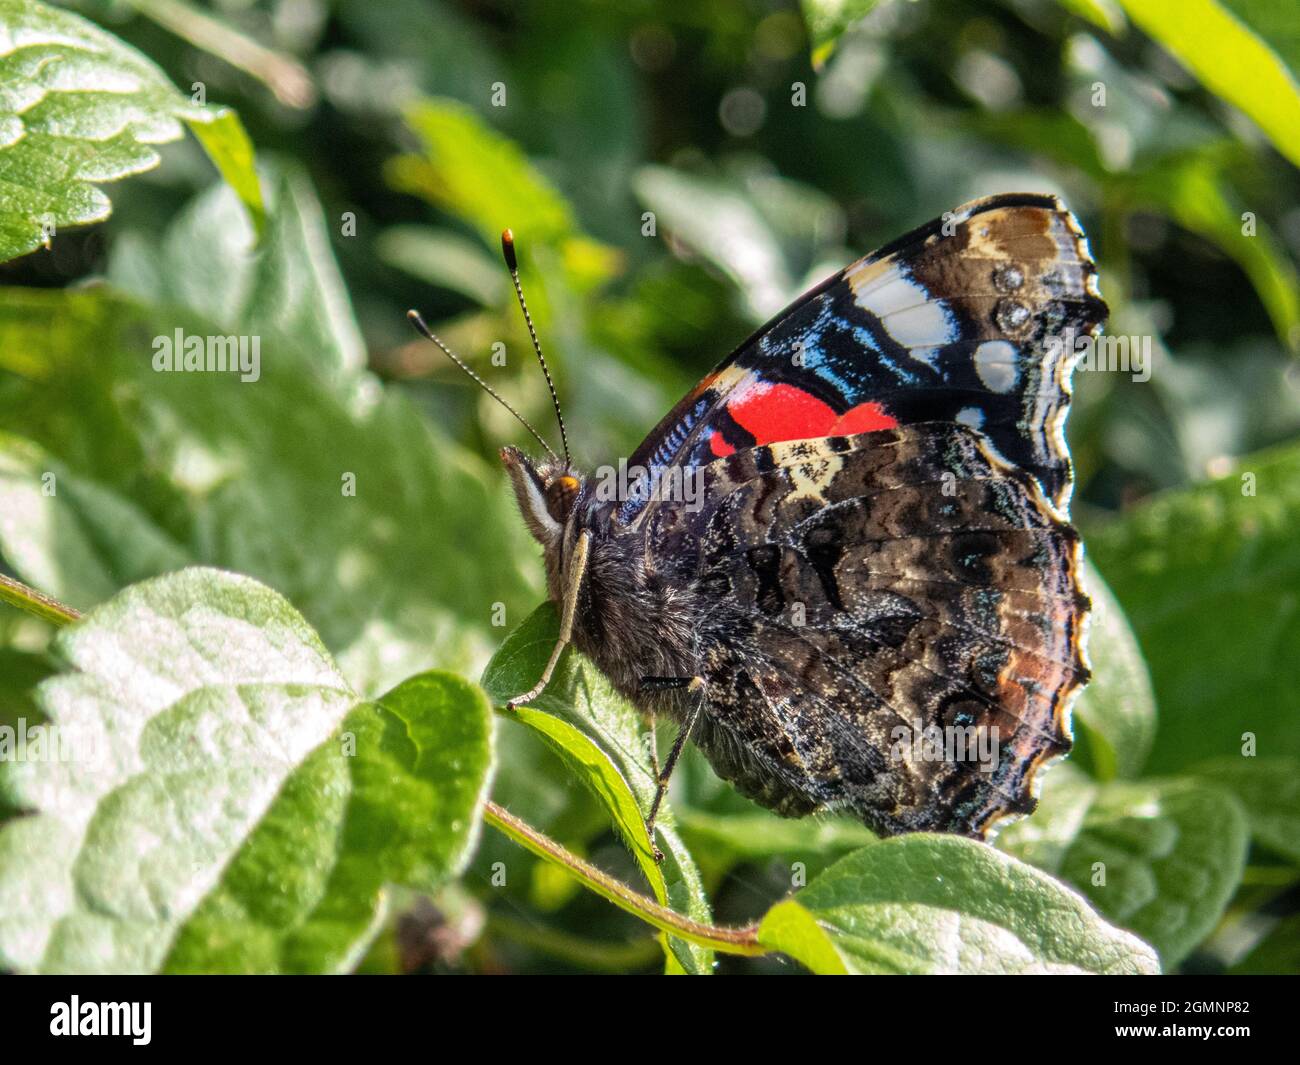 Papillon de l'amiral rouge, Vanessa atalanta, reposant sur une feuille avec ses ailes colorées repliées pour aider son camouflage, Alresford, Hampshire, Royaume-Uni Banque D'Images